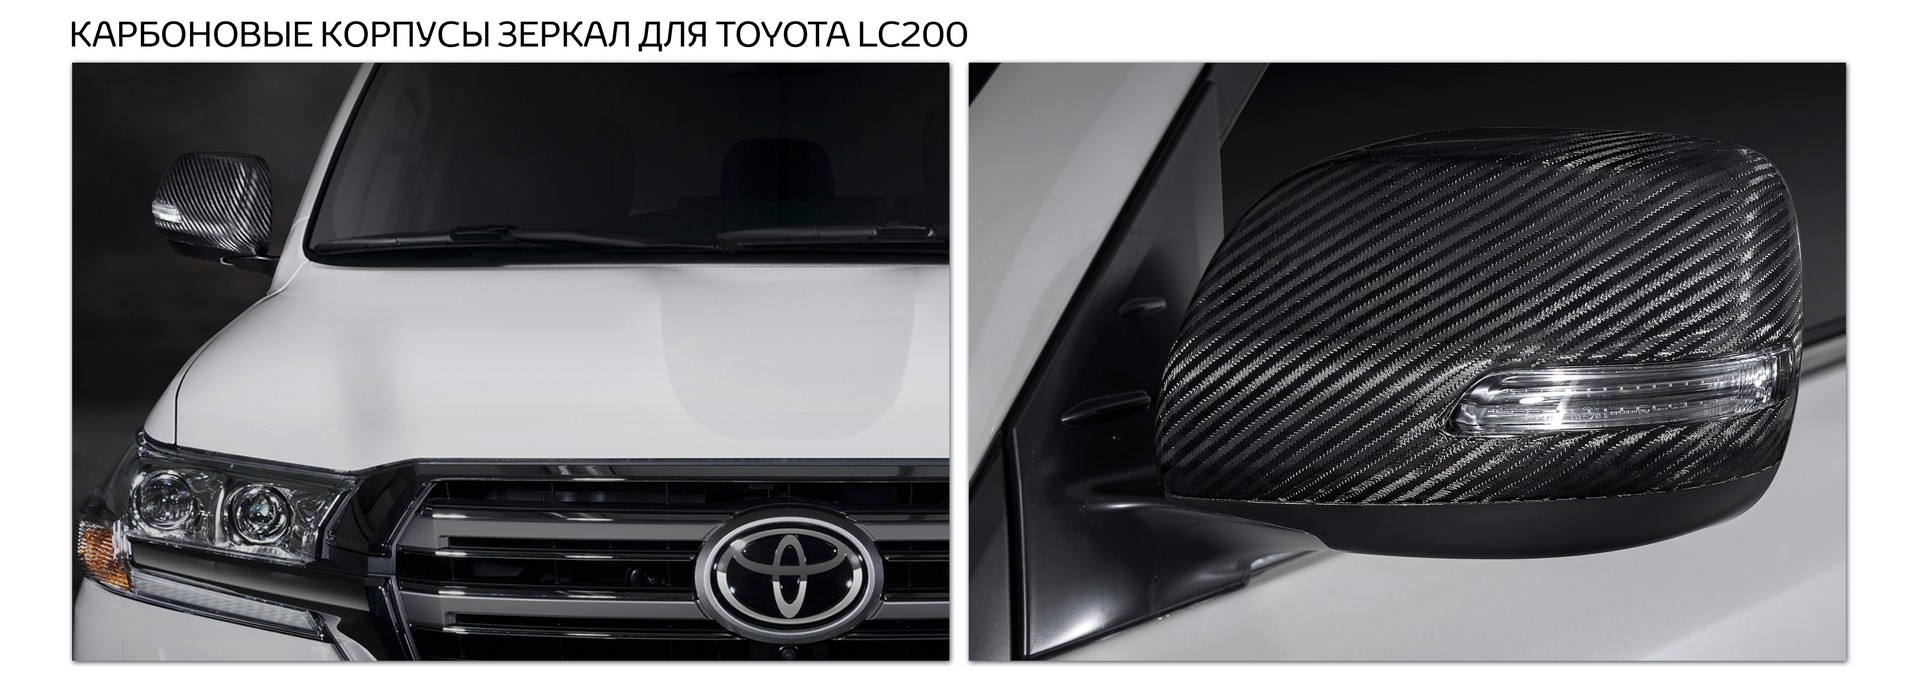 Карбоновые корпуса зеркал для Toyota LC200